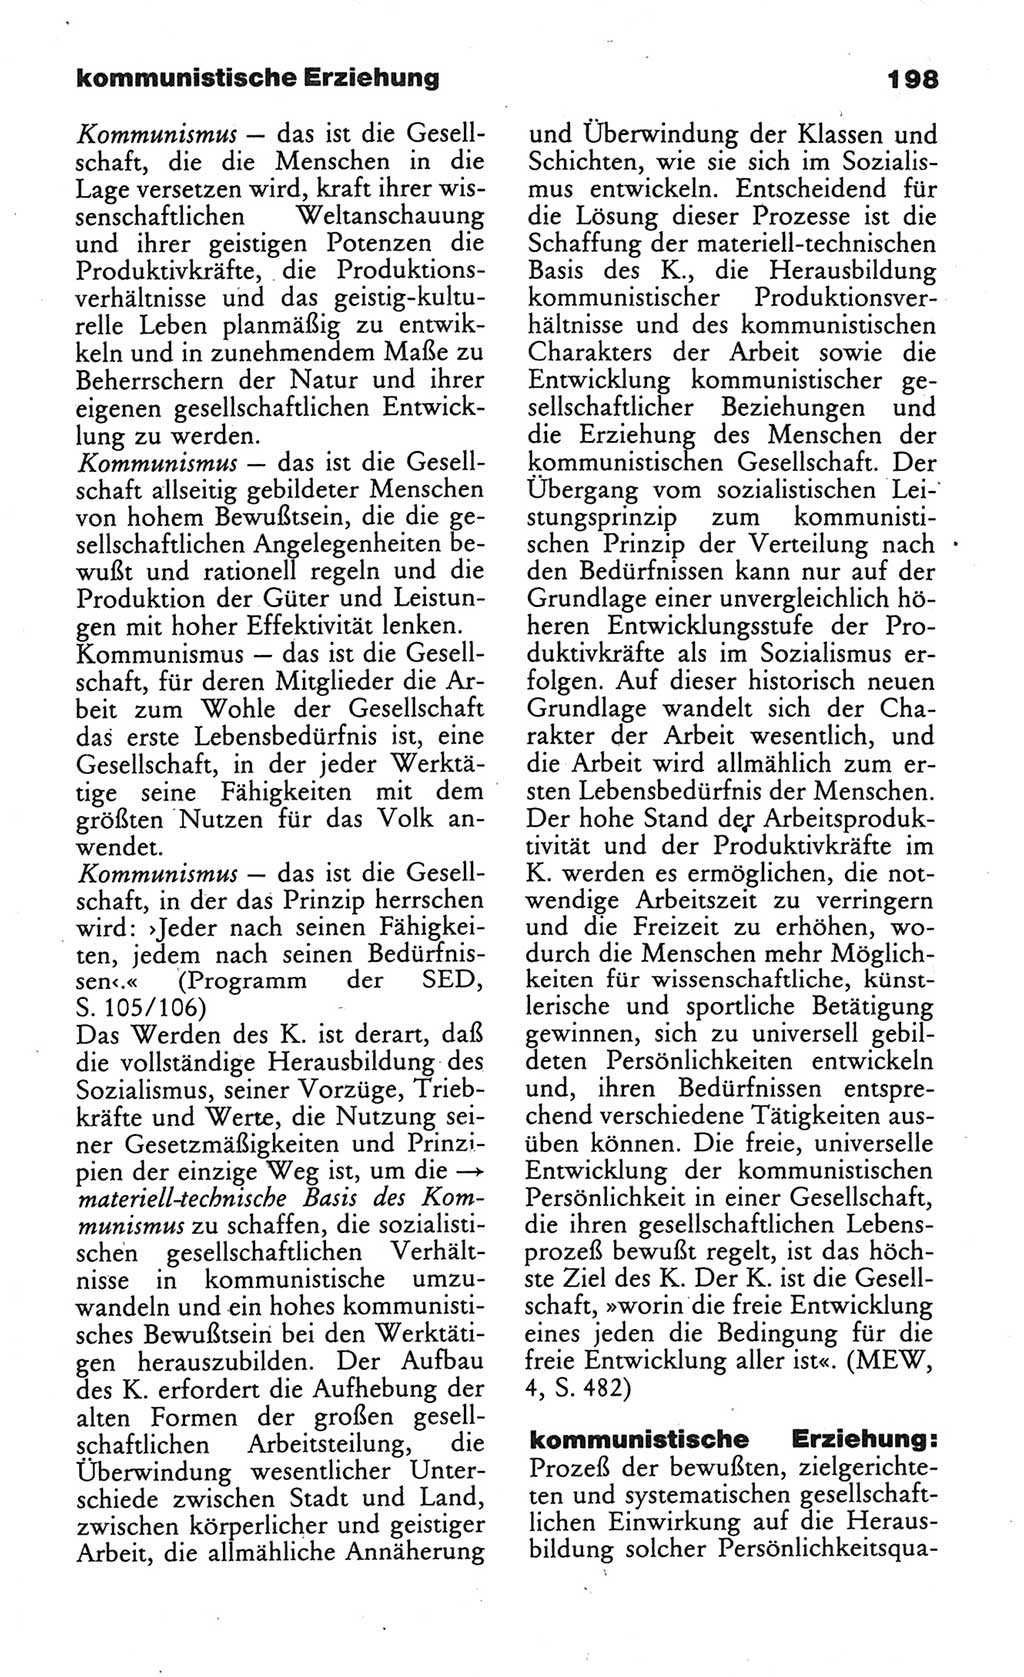 Wörterbuch des wissenschaftlichen Kommunismus [Deutsche Demokratische Republik (DDR)] 1984, Seite 198 (Wb. wiss. Komm. DDR 1984, S. 198)